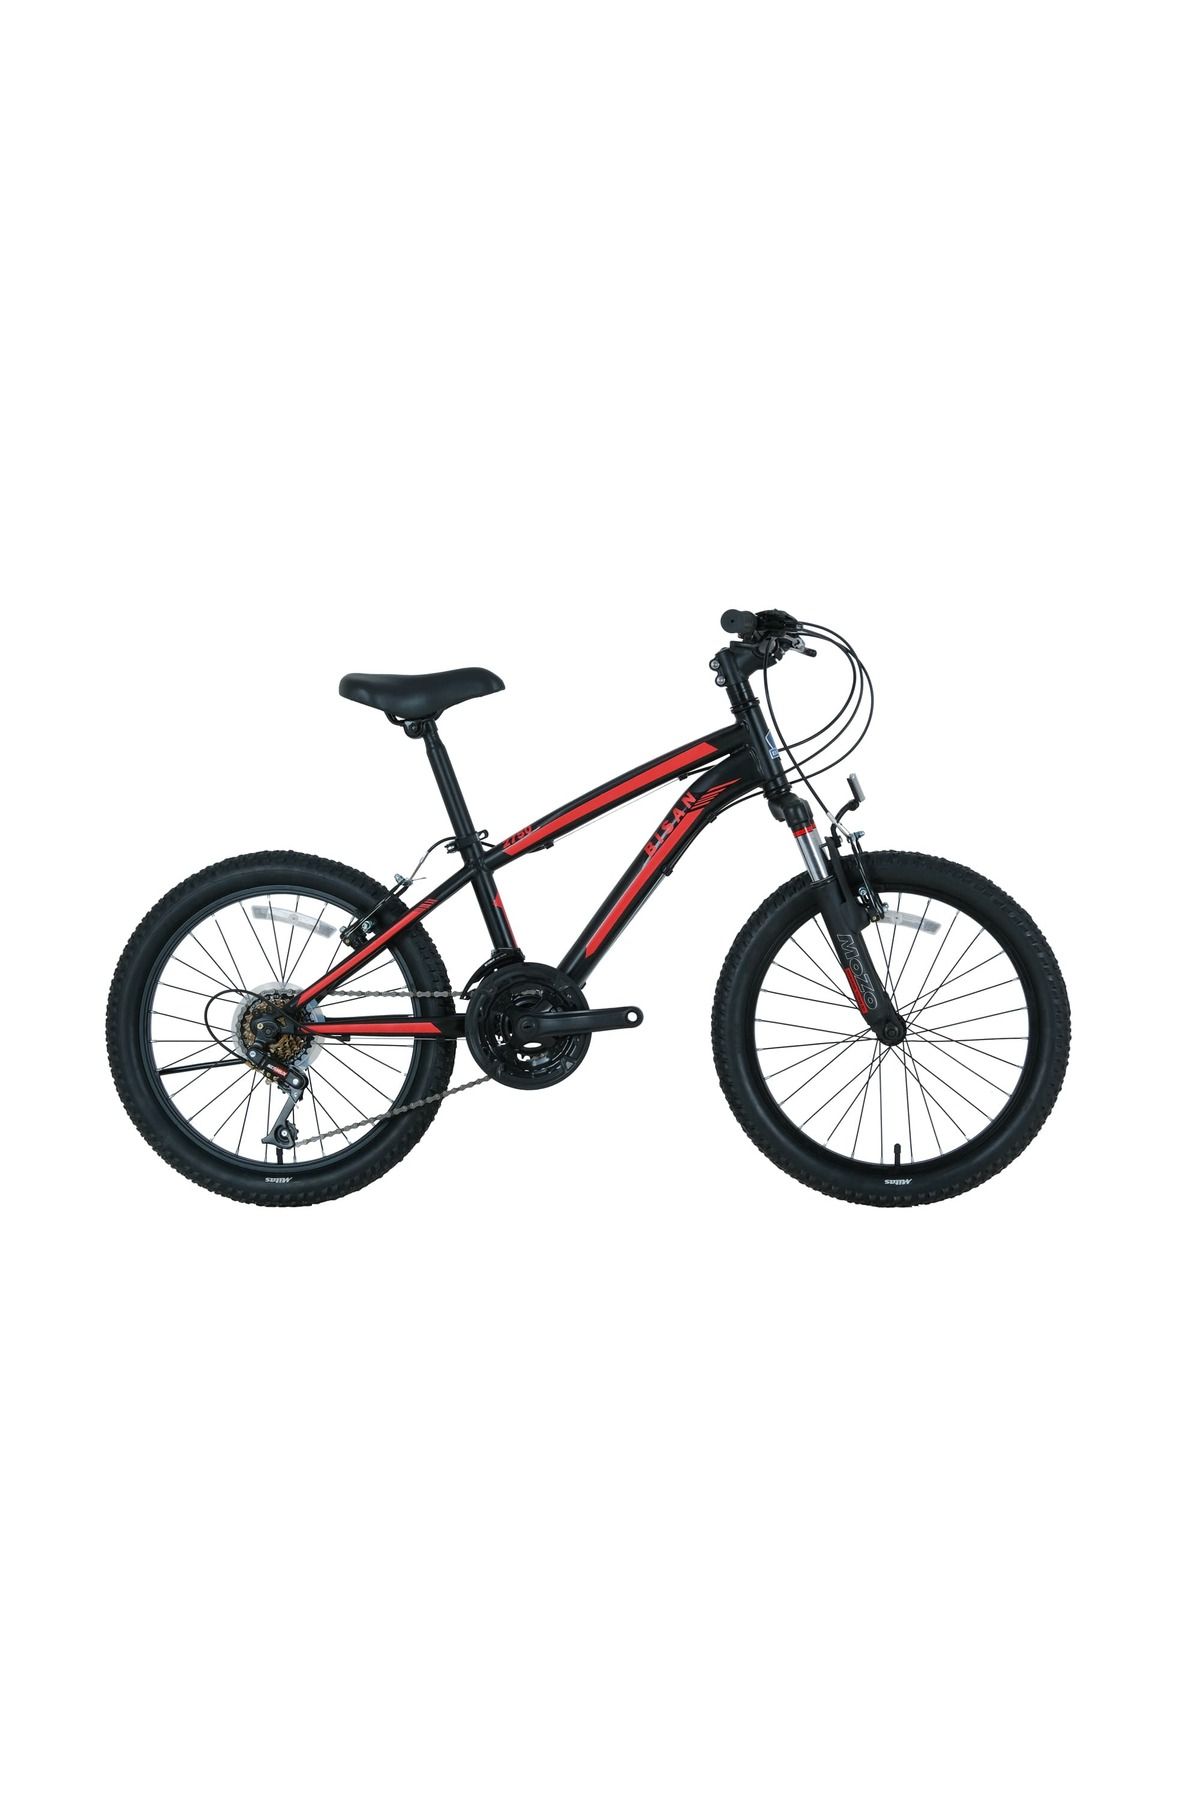 Bisan Kds 2750 V-23 20 Jant Bisiklet Mat Siyah Kırmızı